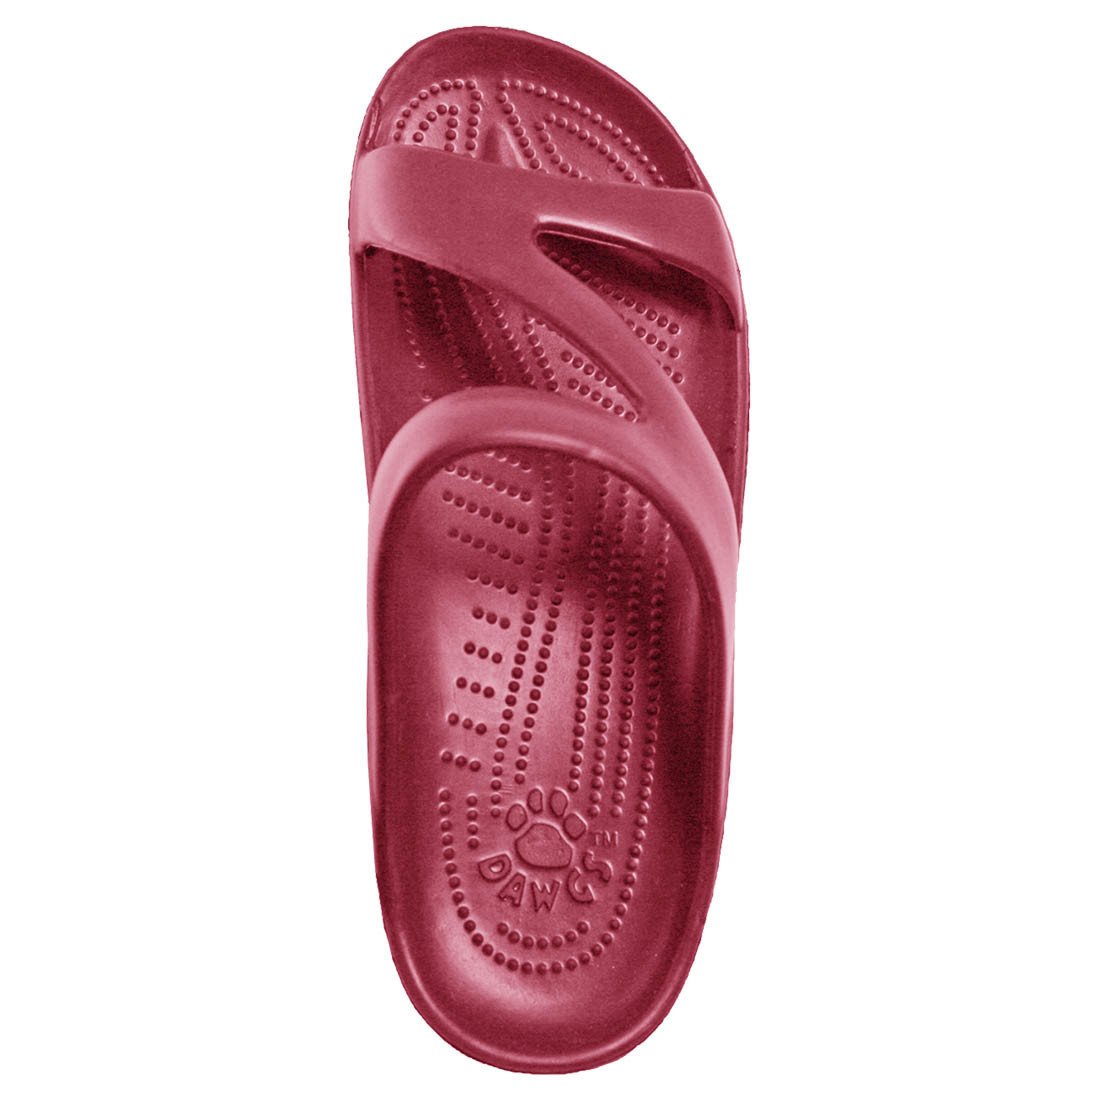 Women's Z Sandals - Burgundy by DAWGS USA